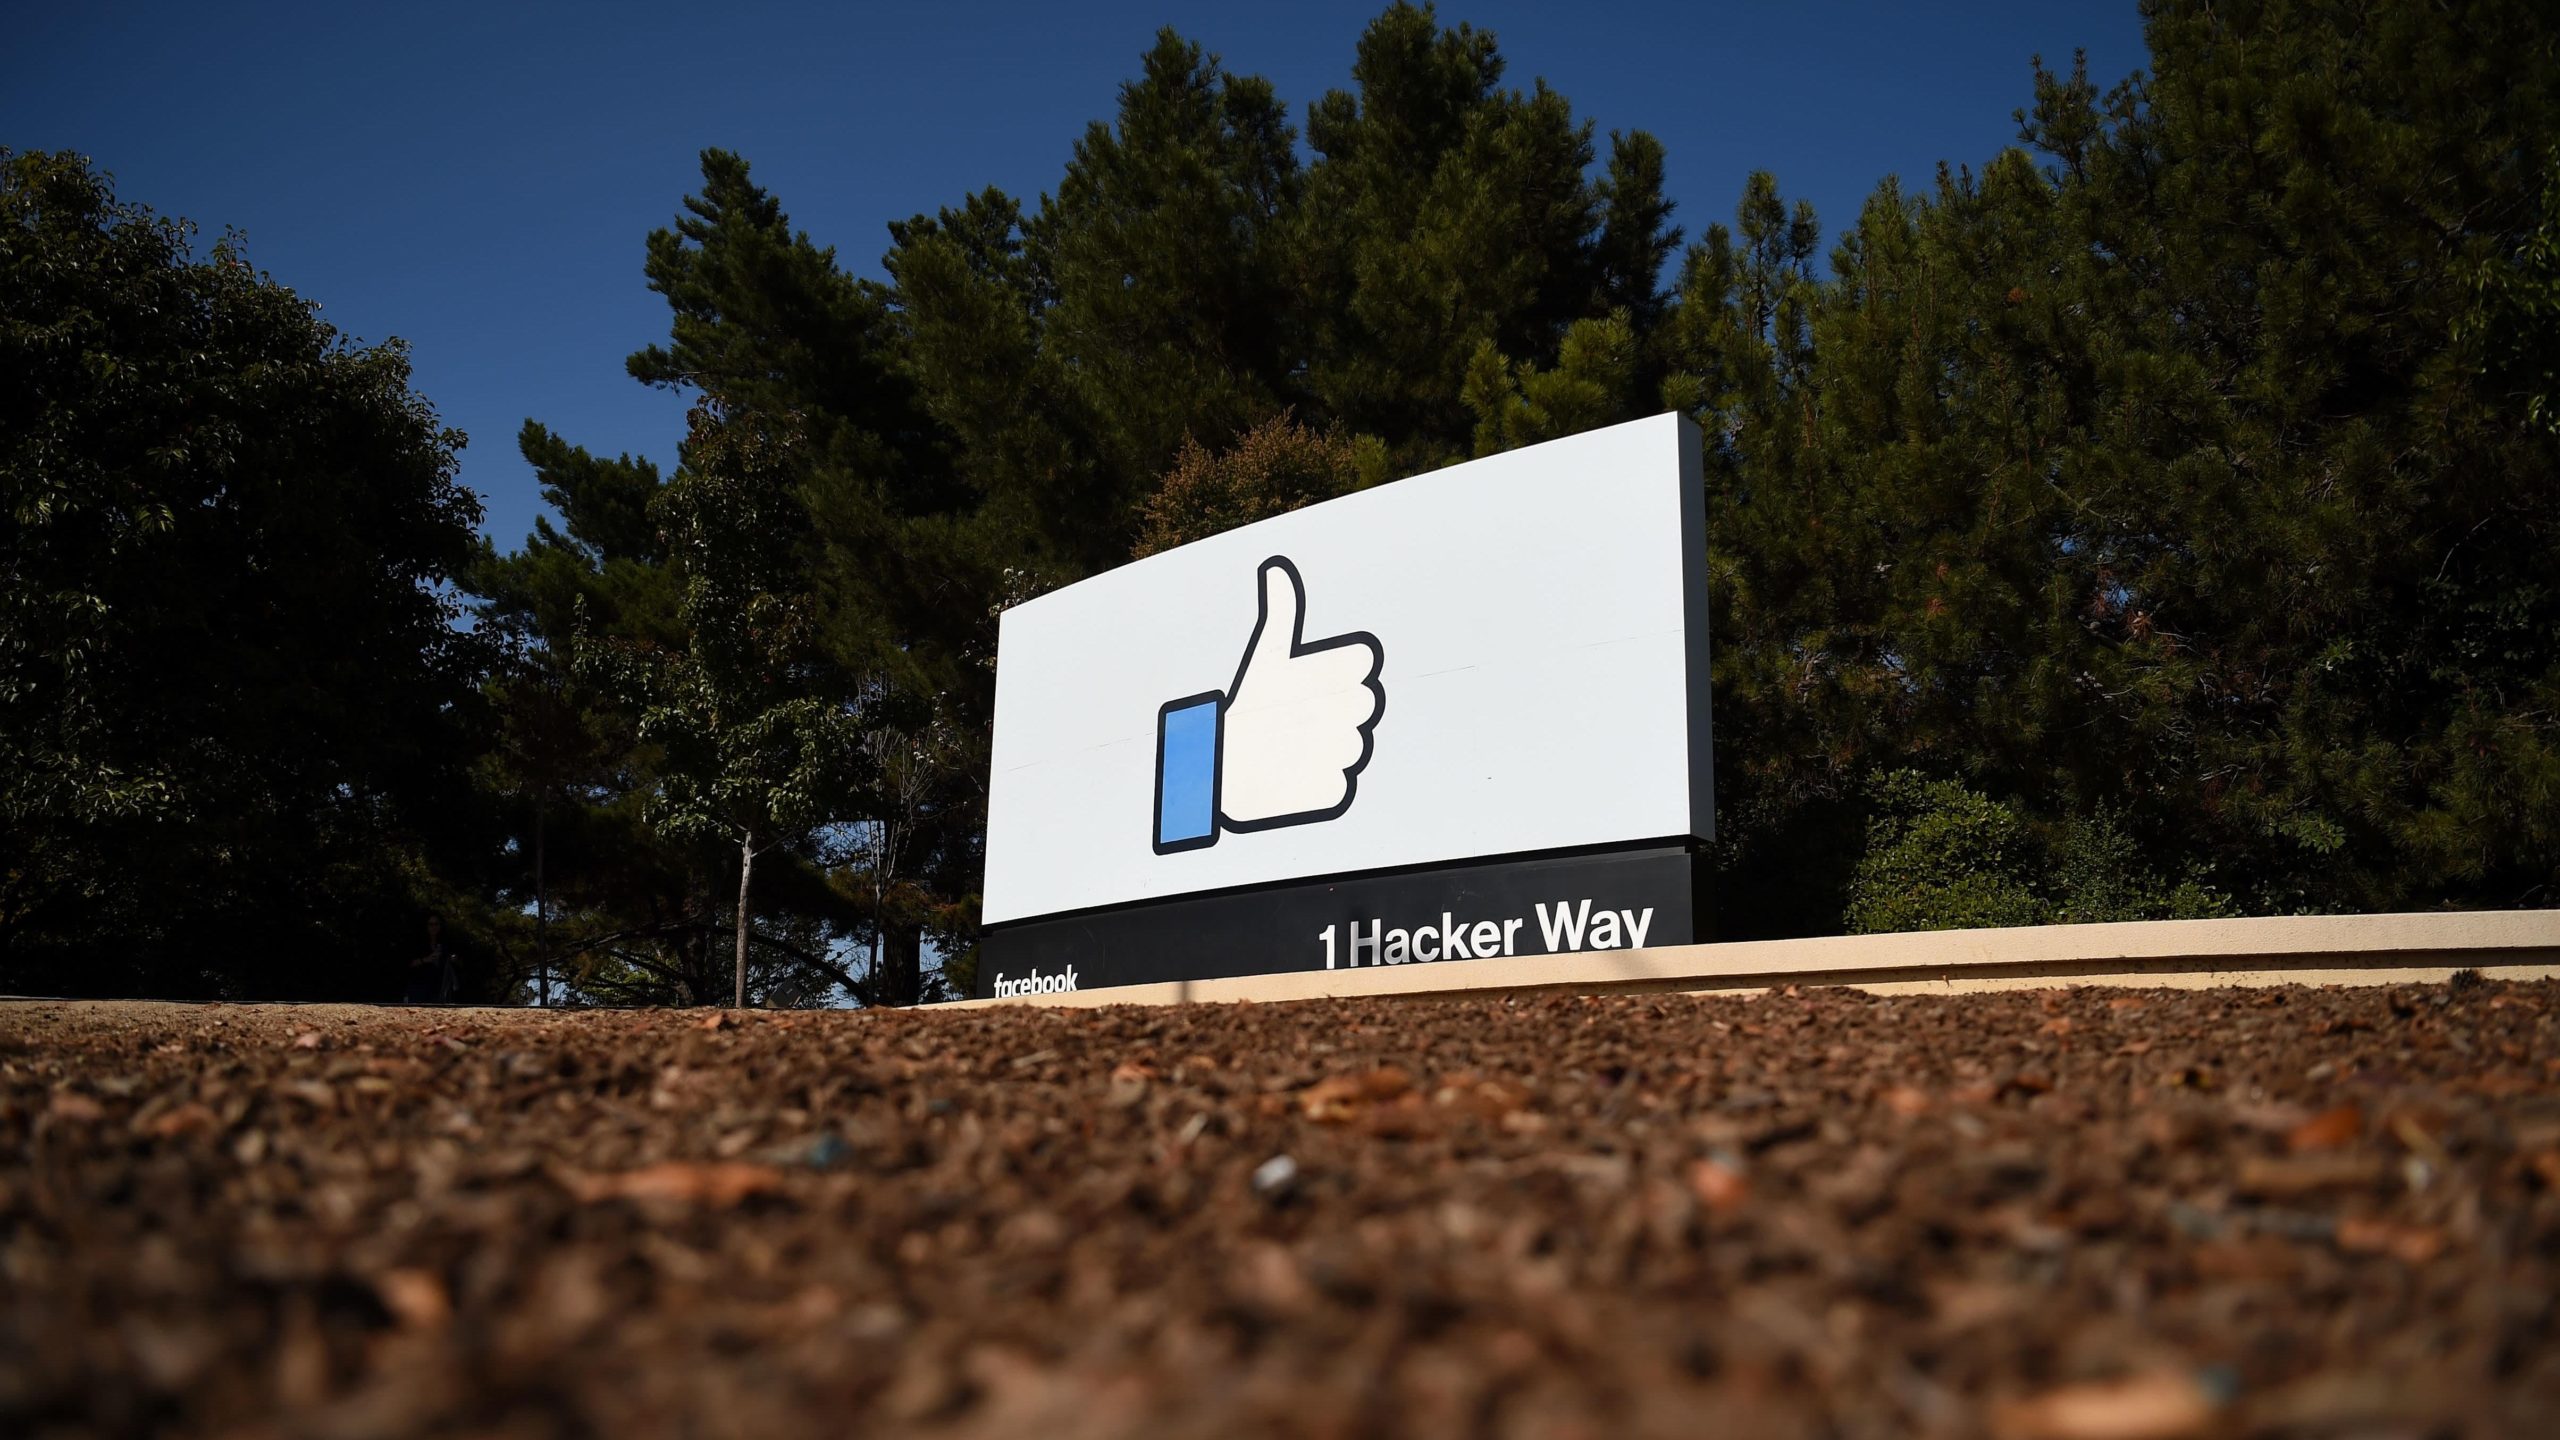 Dados de milhões de usuários do VK, o 'Facebook russo', vazam na